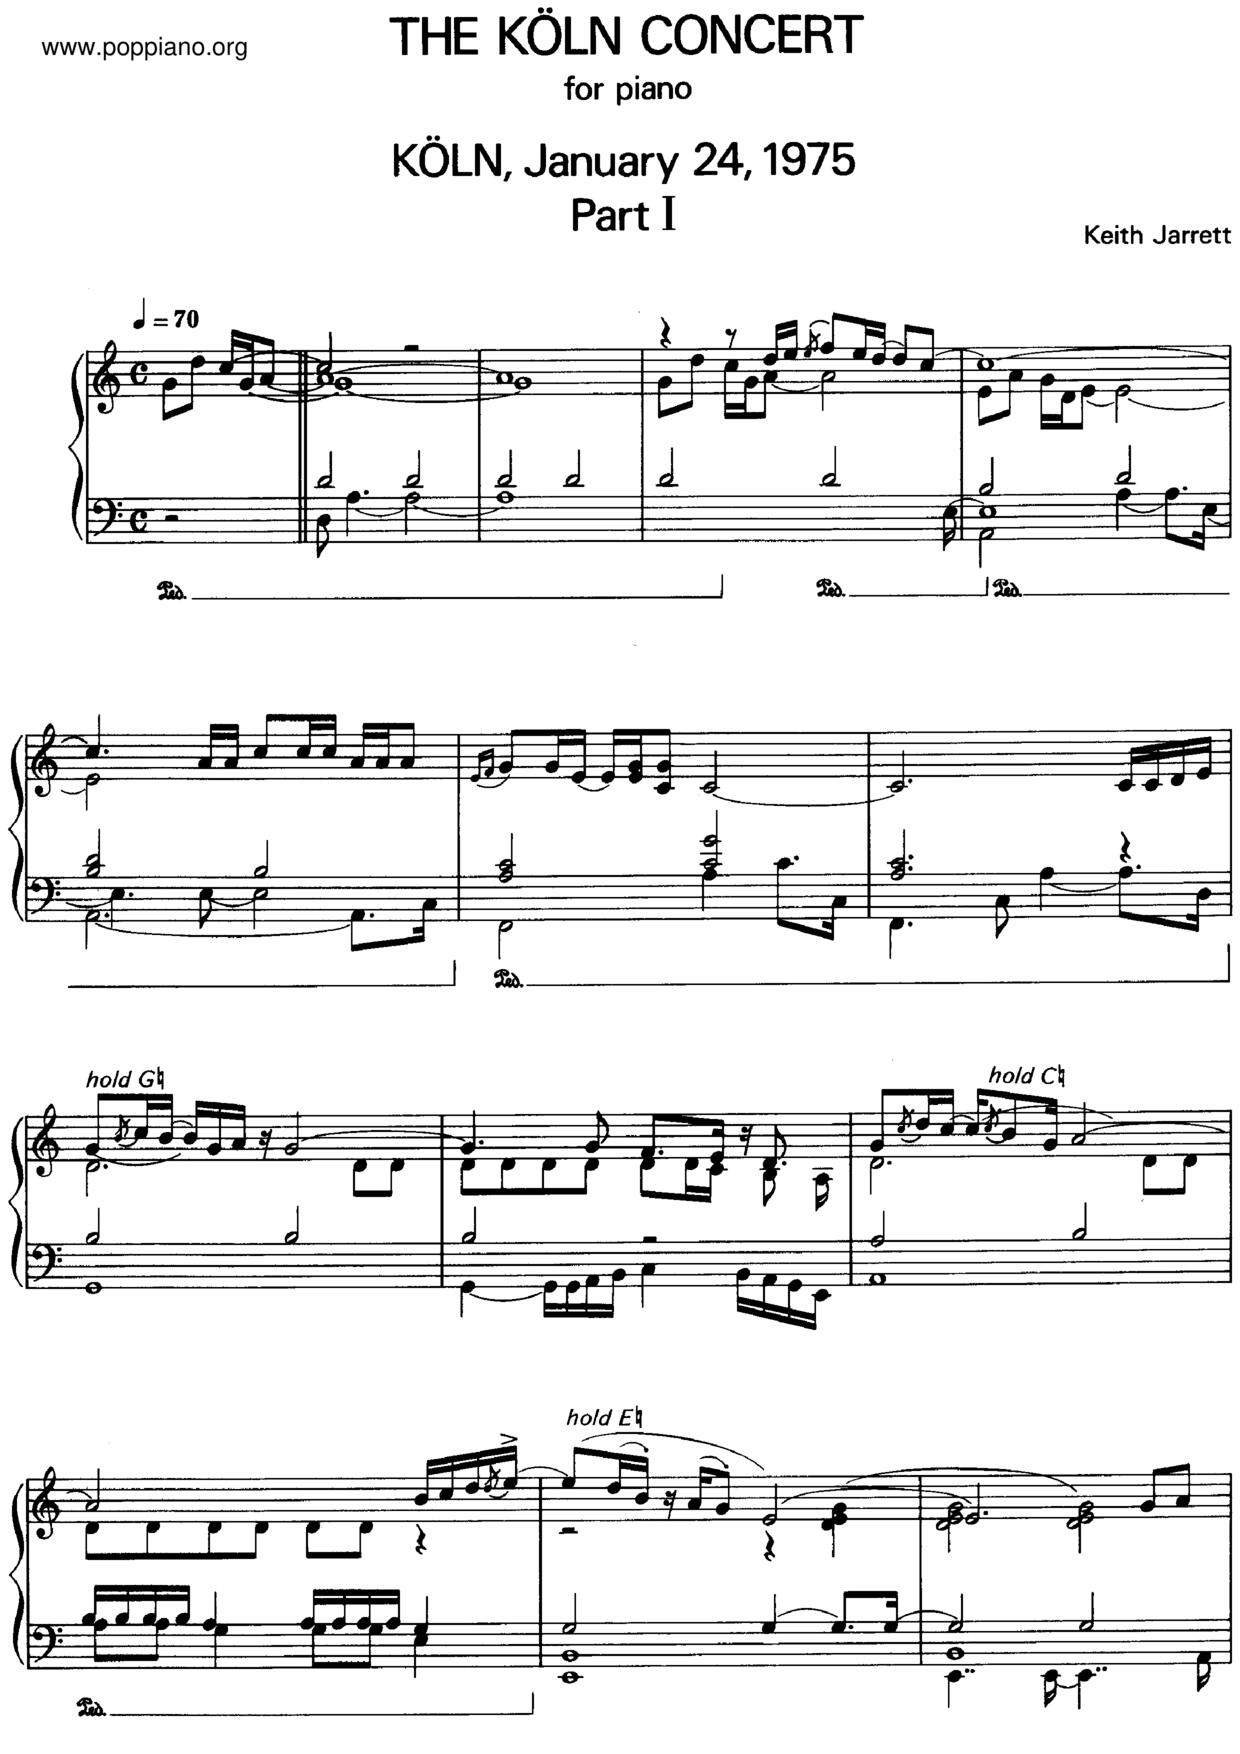 The Koln Concert Part I Score